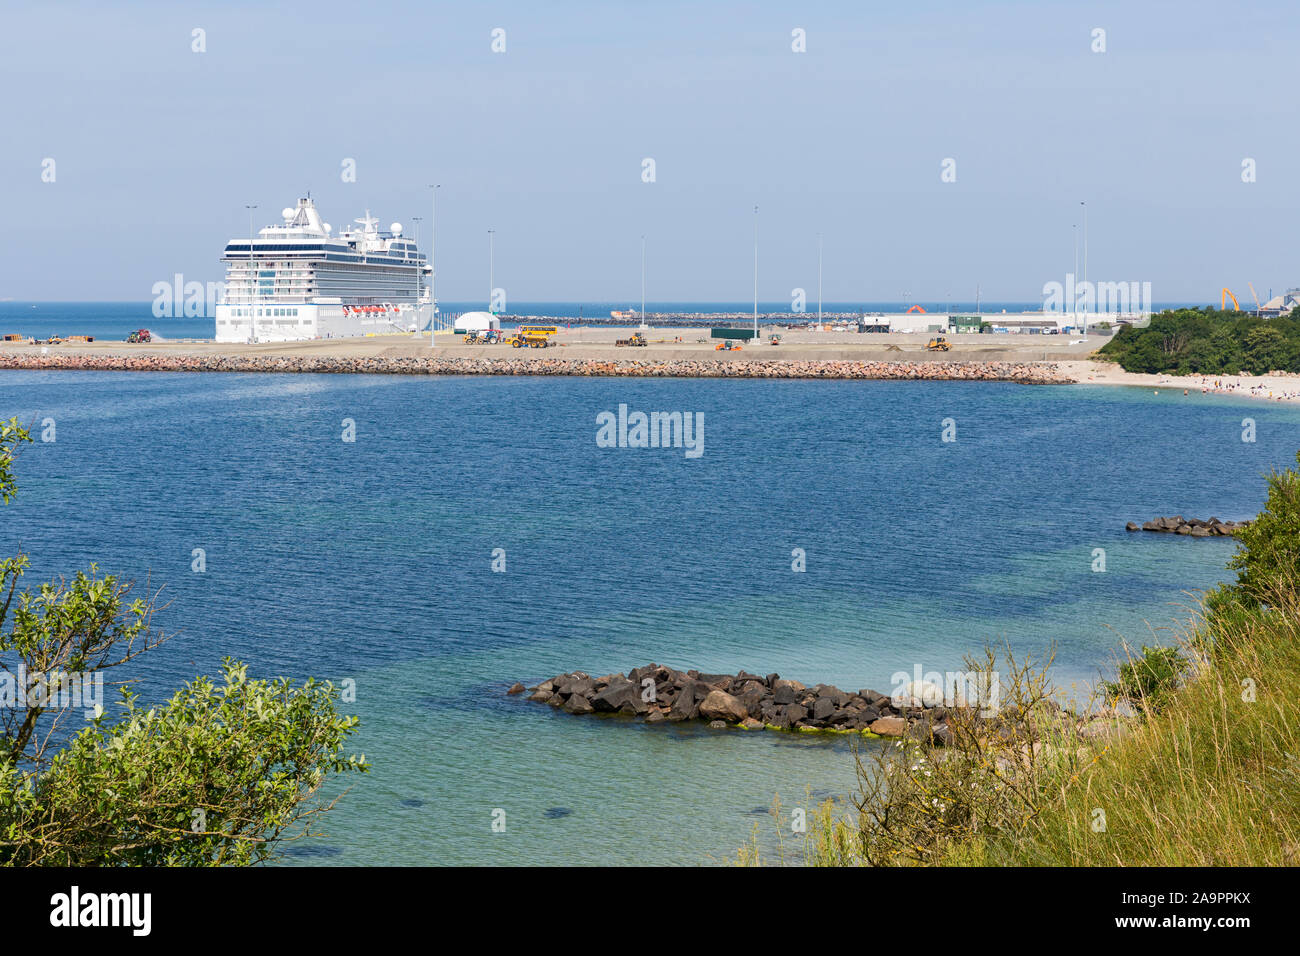 Rønne; Bornholm, Strand, Meer, neuer Hafen, Kreuzfahrtschiff Stock Photo